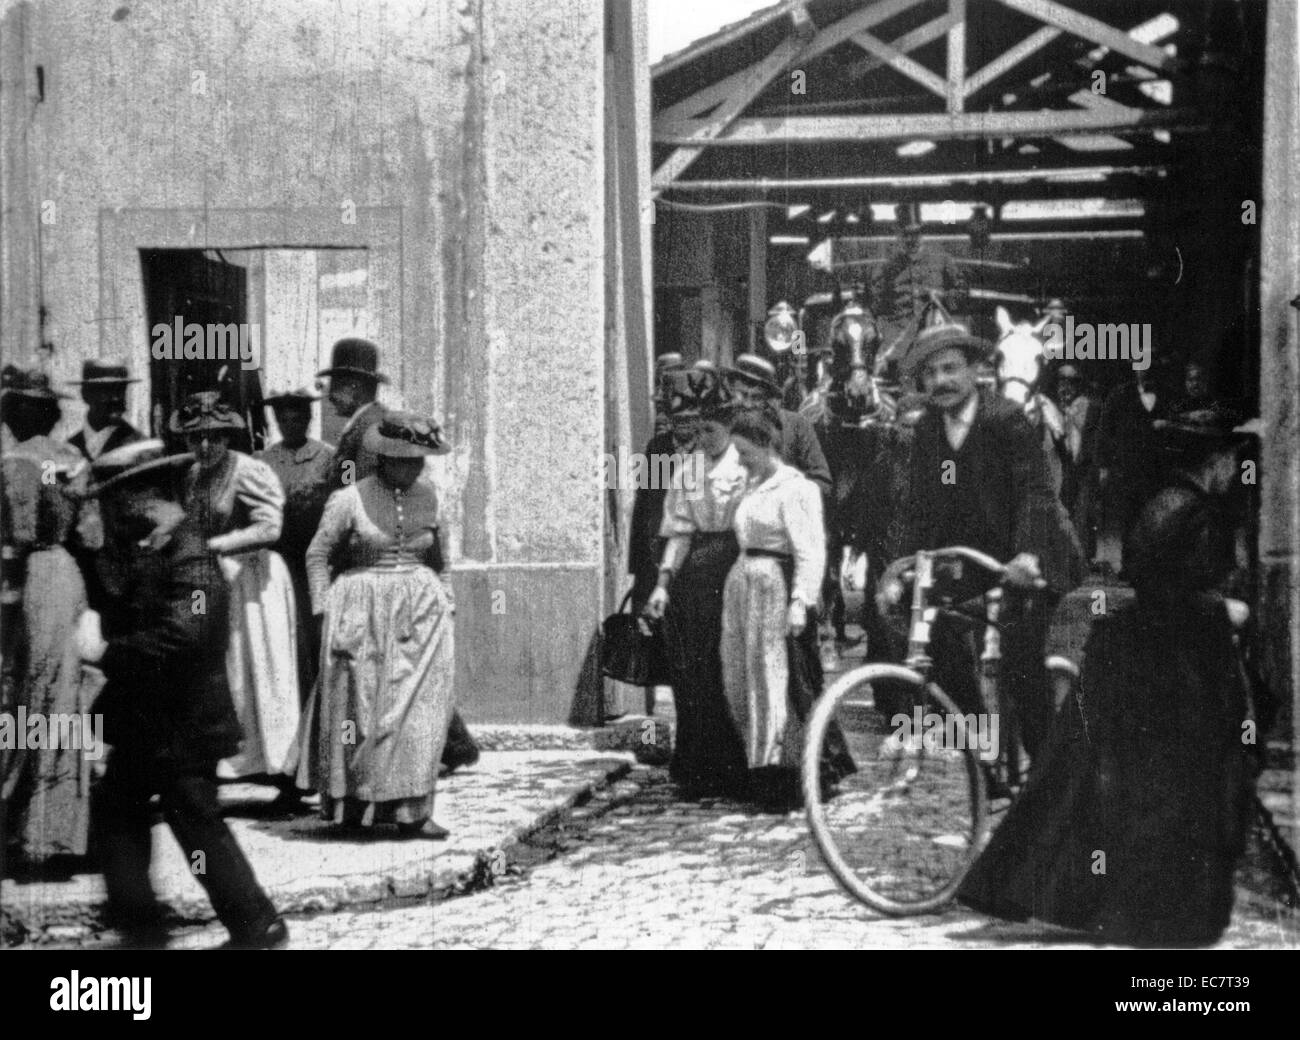 La sortie de l'usine, cette courte 1895 Film muet noir et blanc documentaire est crédité comme étant le premier vrai film jamais réalisé. Également connu sous le nom de travailleurs qui quittent l'usine Lumière à Lyon, il a été réalisé et produit par les frères Lumière. Banque D'Images